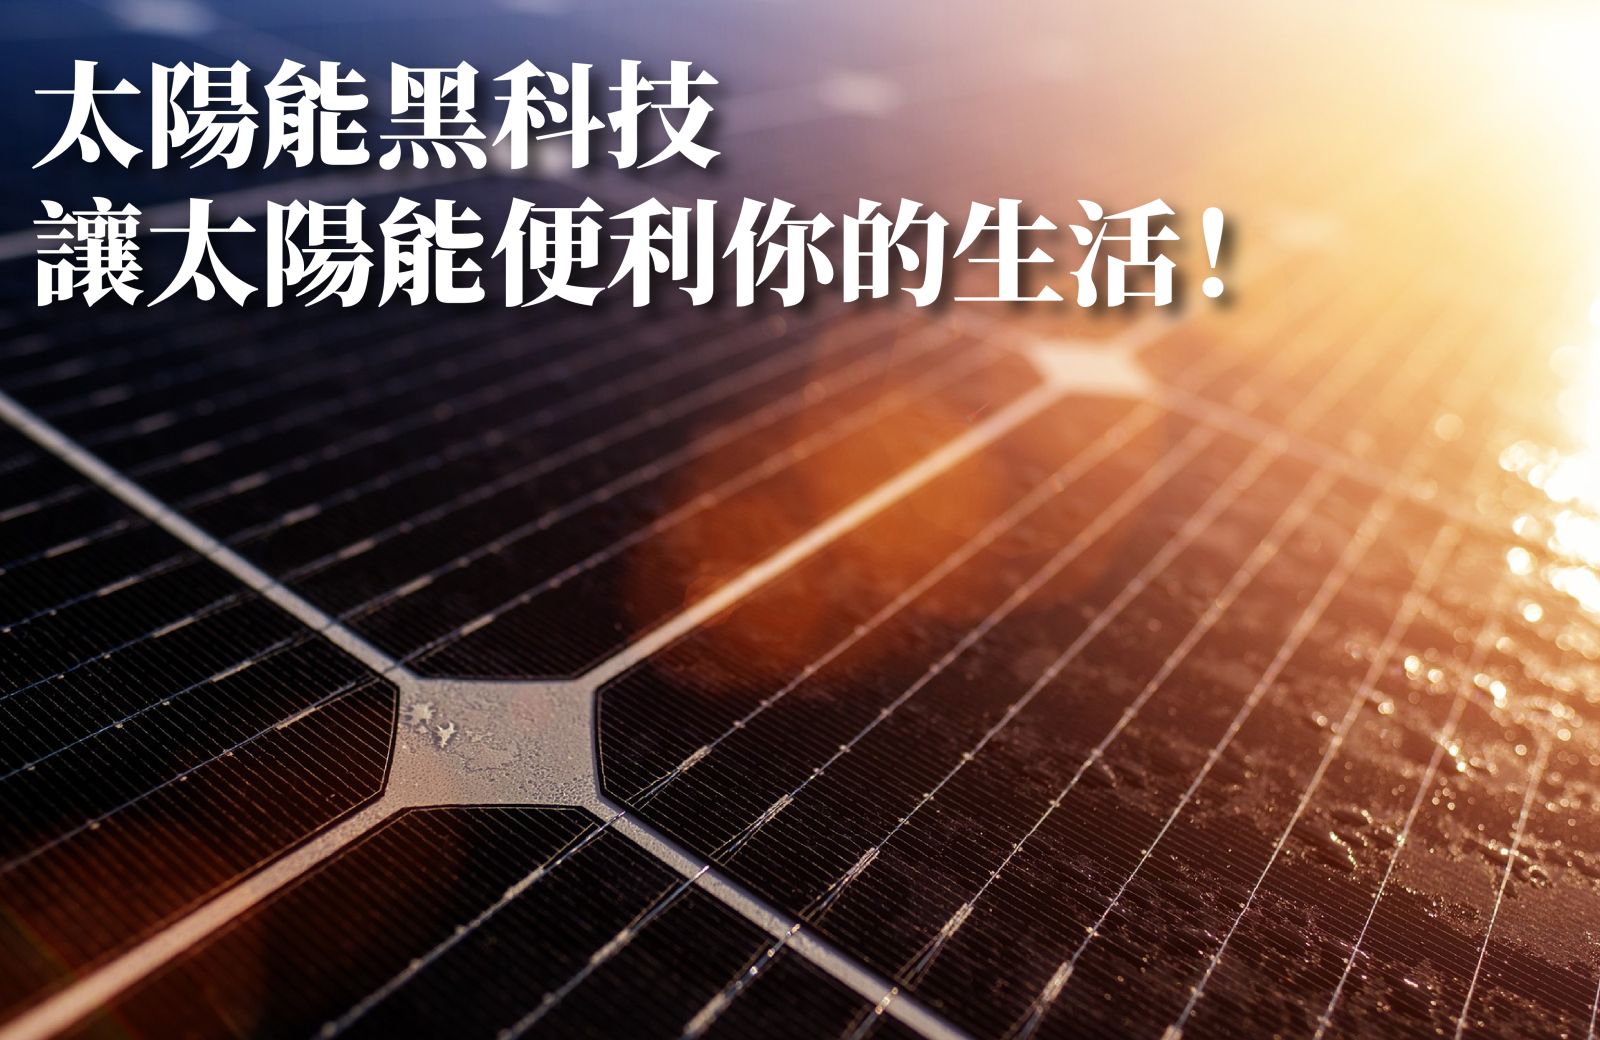 太陽能黑科技 讓太陽能便利你的生活